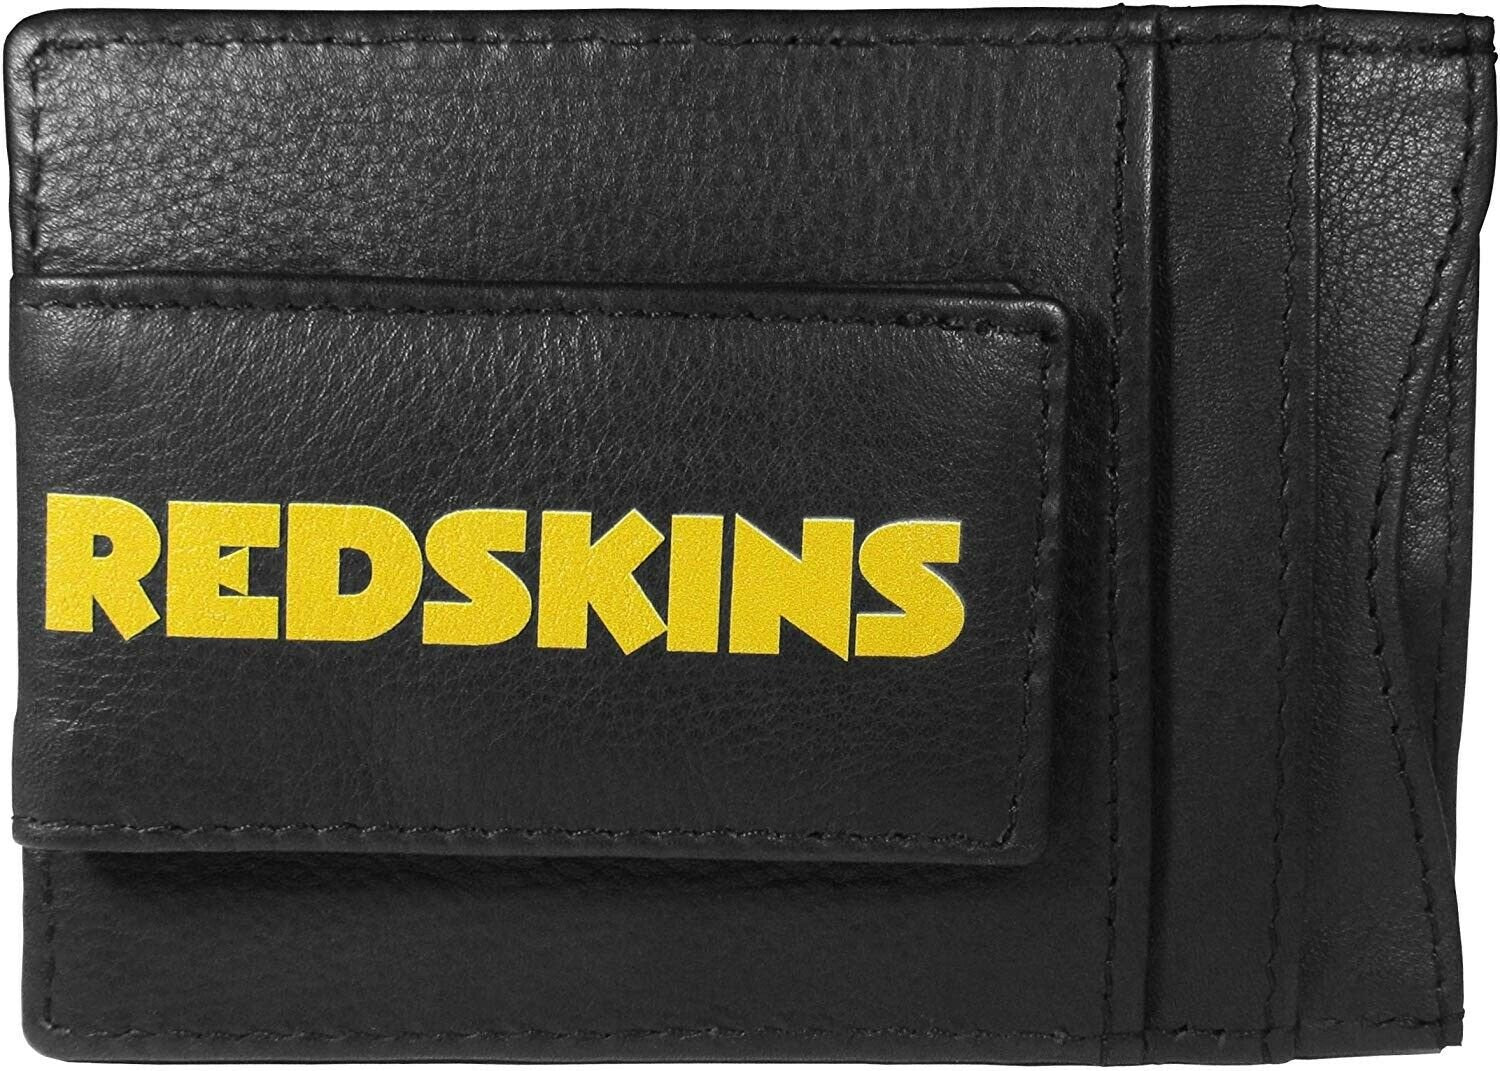 Washington Redskins Black Leather Wallet, Front Pocket Magnetic Money Clip, Printed Logo